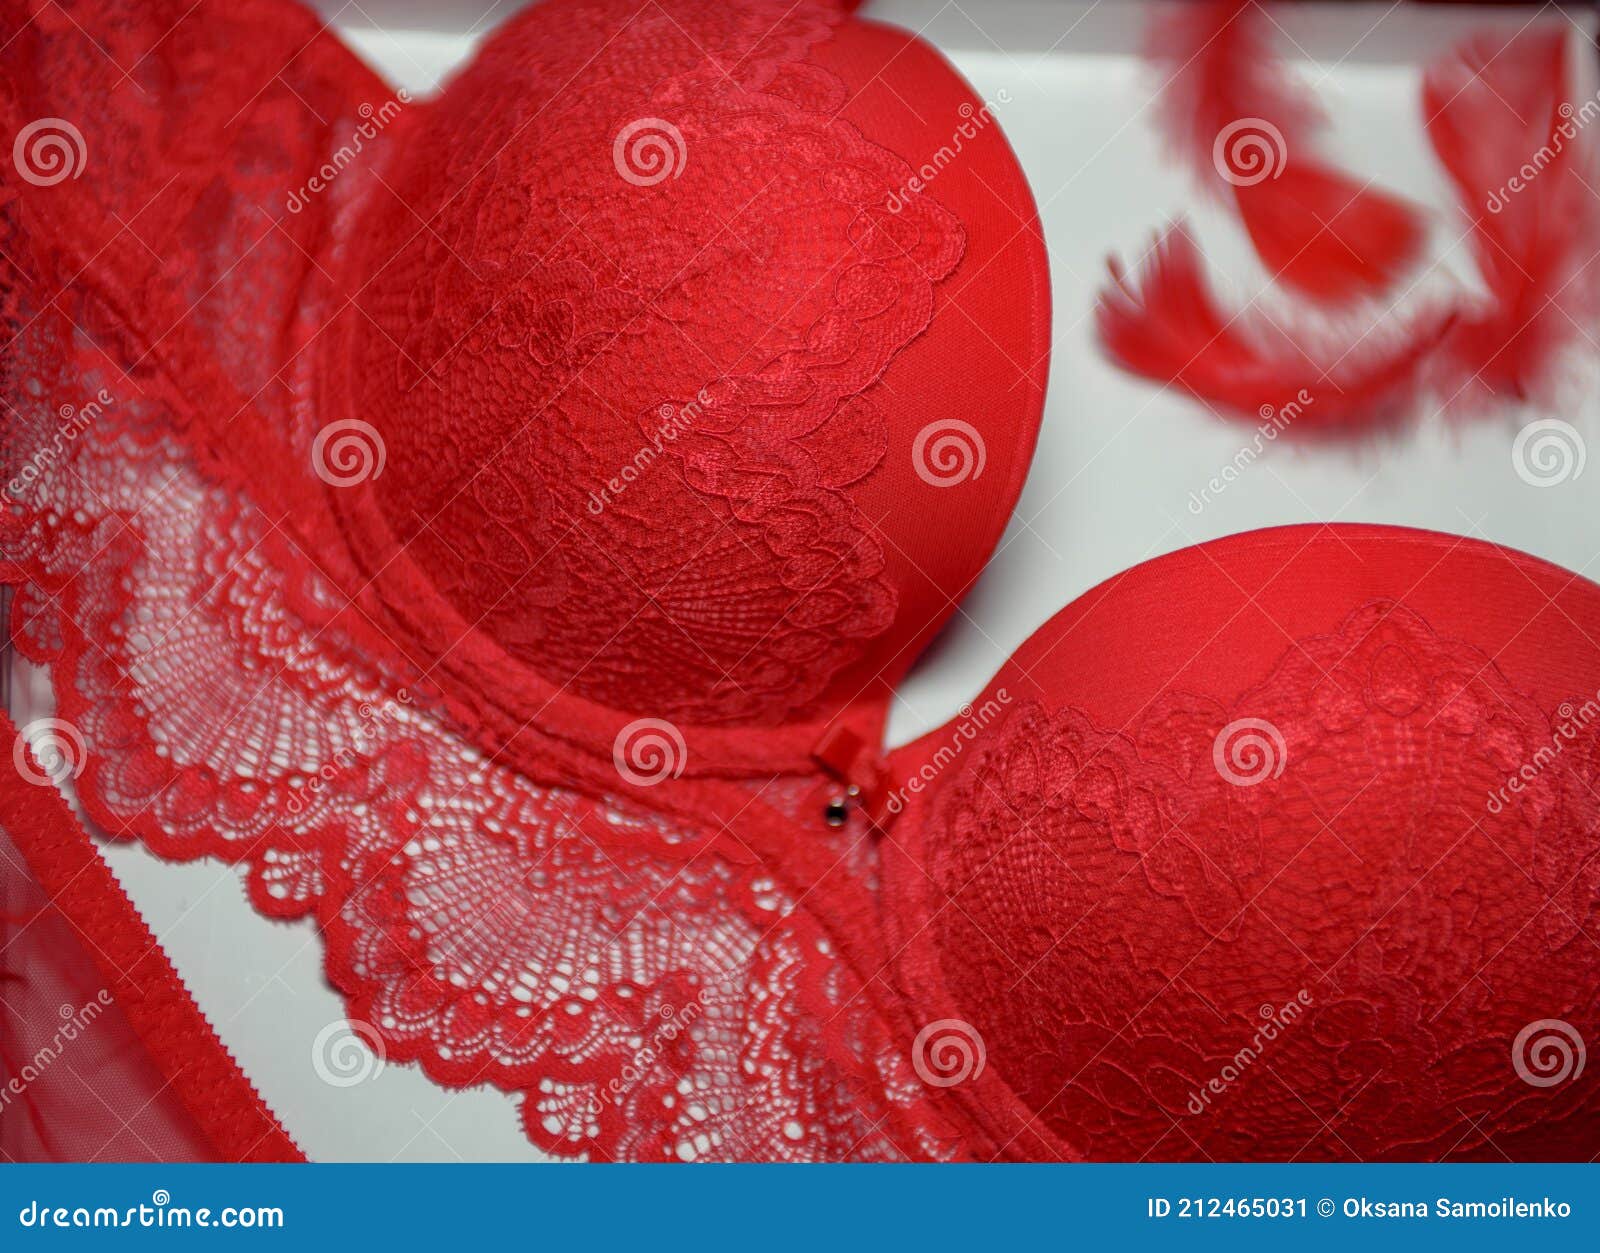 Lencería Sexy De Color Rojo Fondo Blanco. Ropa Interior Para Mujeres. Ropa Interior De Encaje Imagen de - Imagen de escarlata, blanco: 212465031